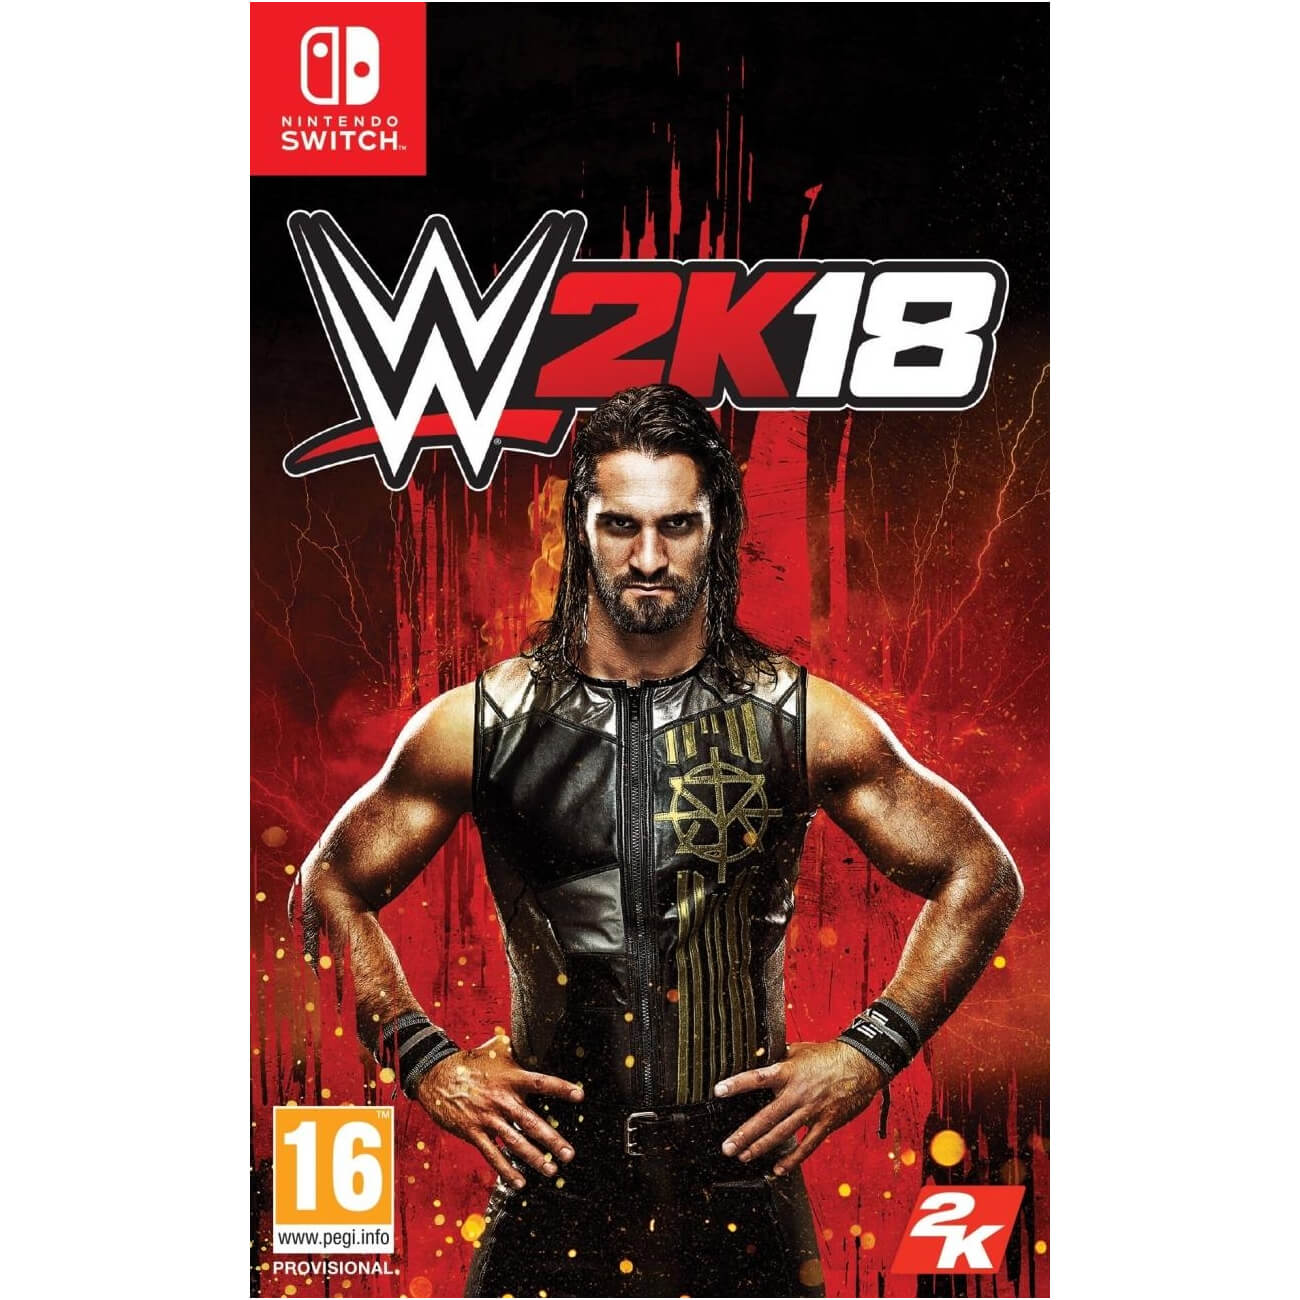  Joc Nintendo Switch WWE 2K18 